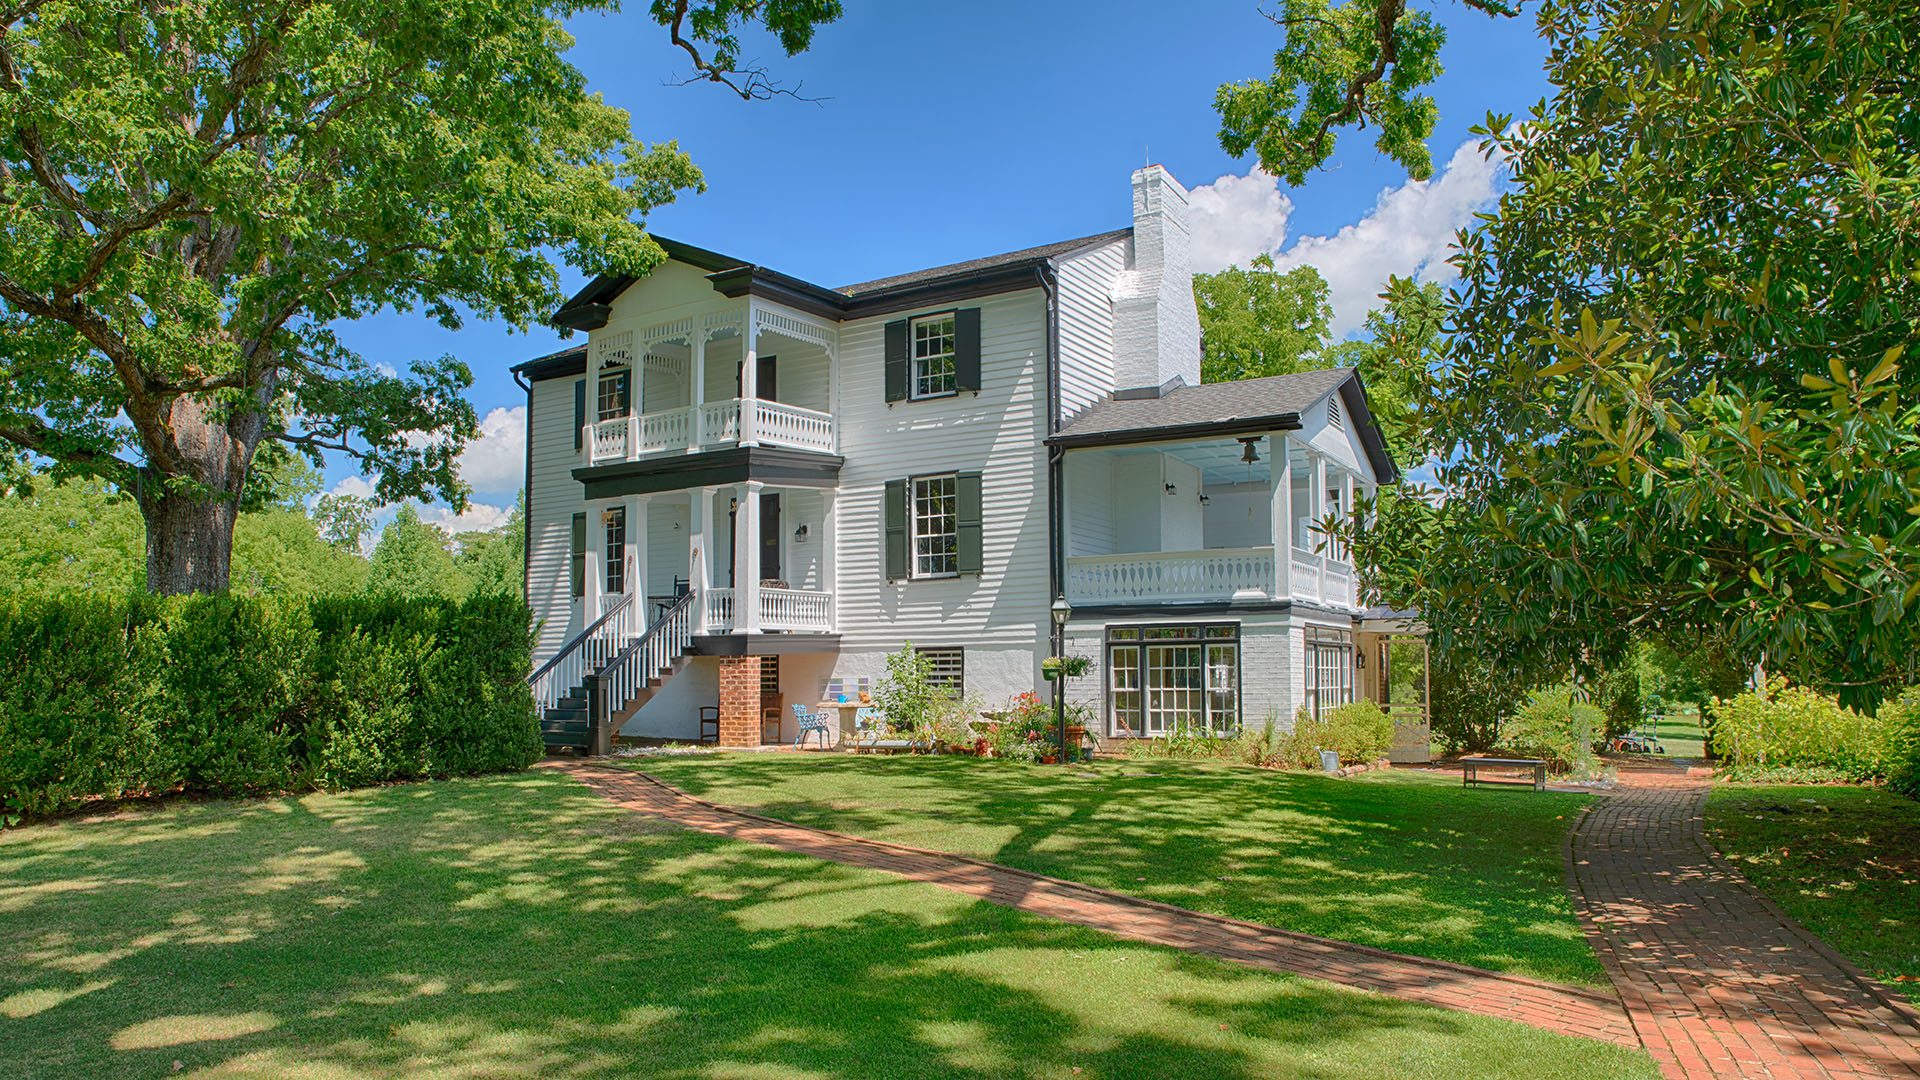 Fluvanna VA Historic Home for Sale